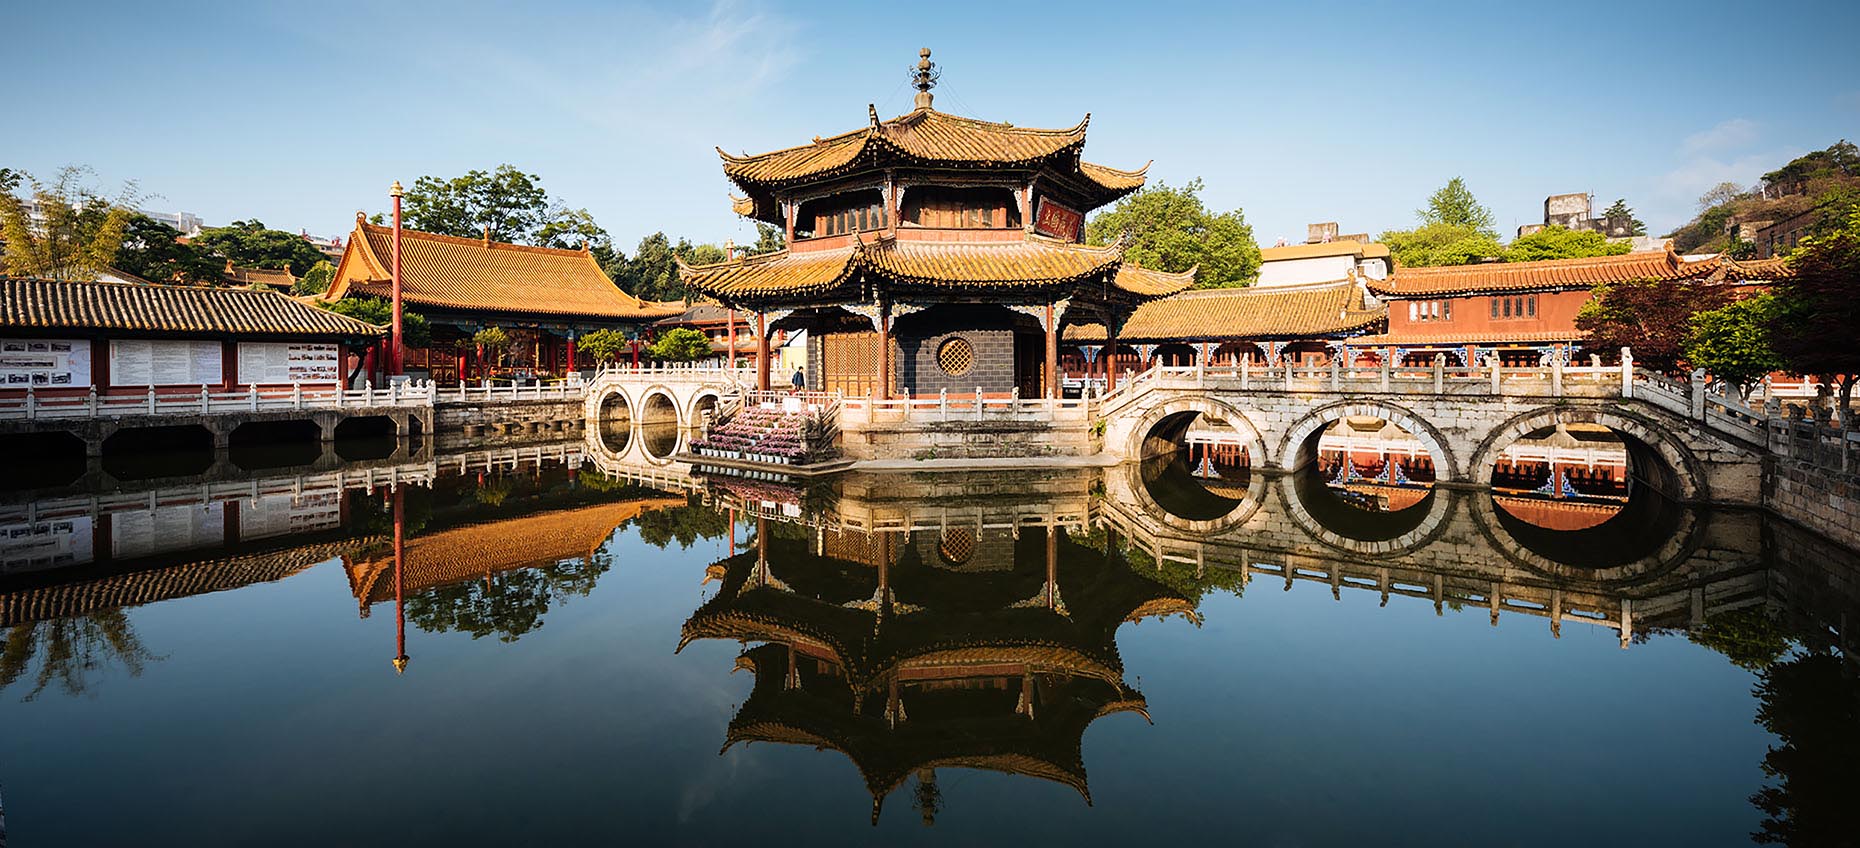 yuantong-buddhist-temple-reflection-kunming-yunnan-china-15